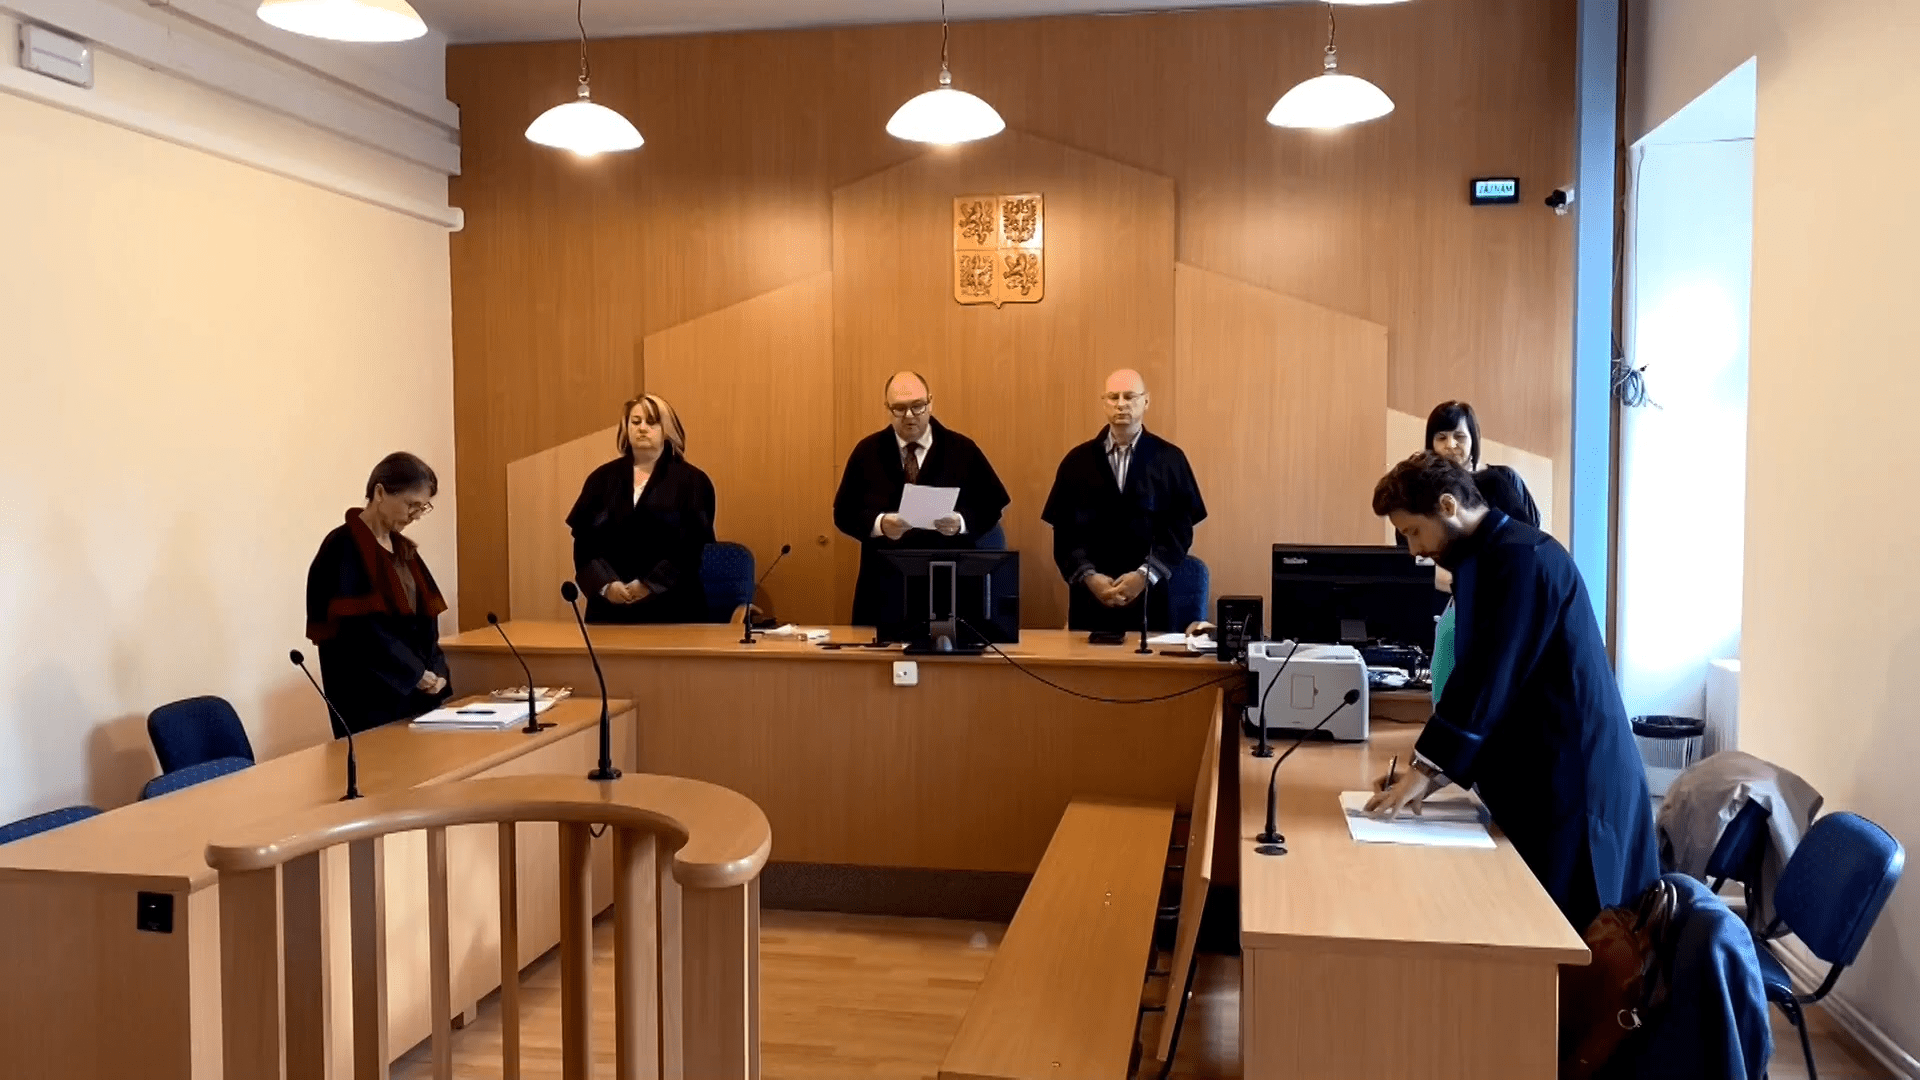 U Okresního soudu v Klatovech padl rozsudek ve sledovaném případu týrání mladé dívky. 